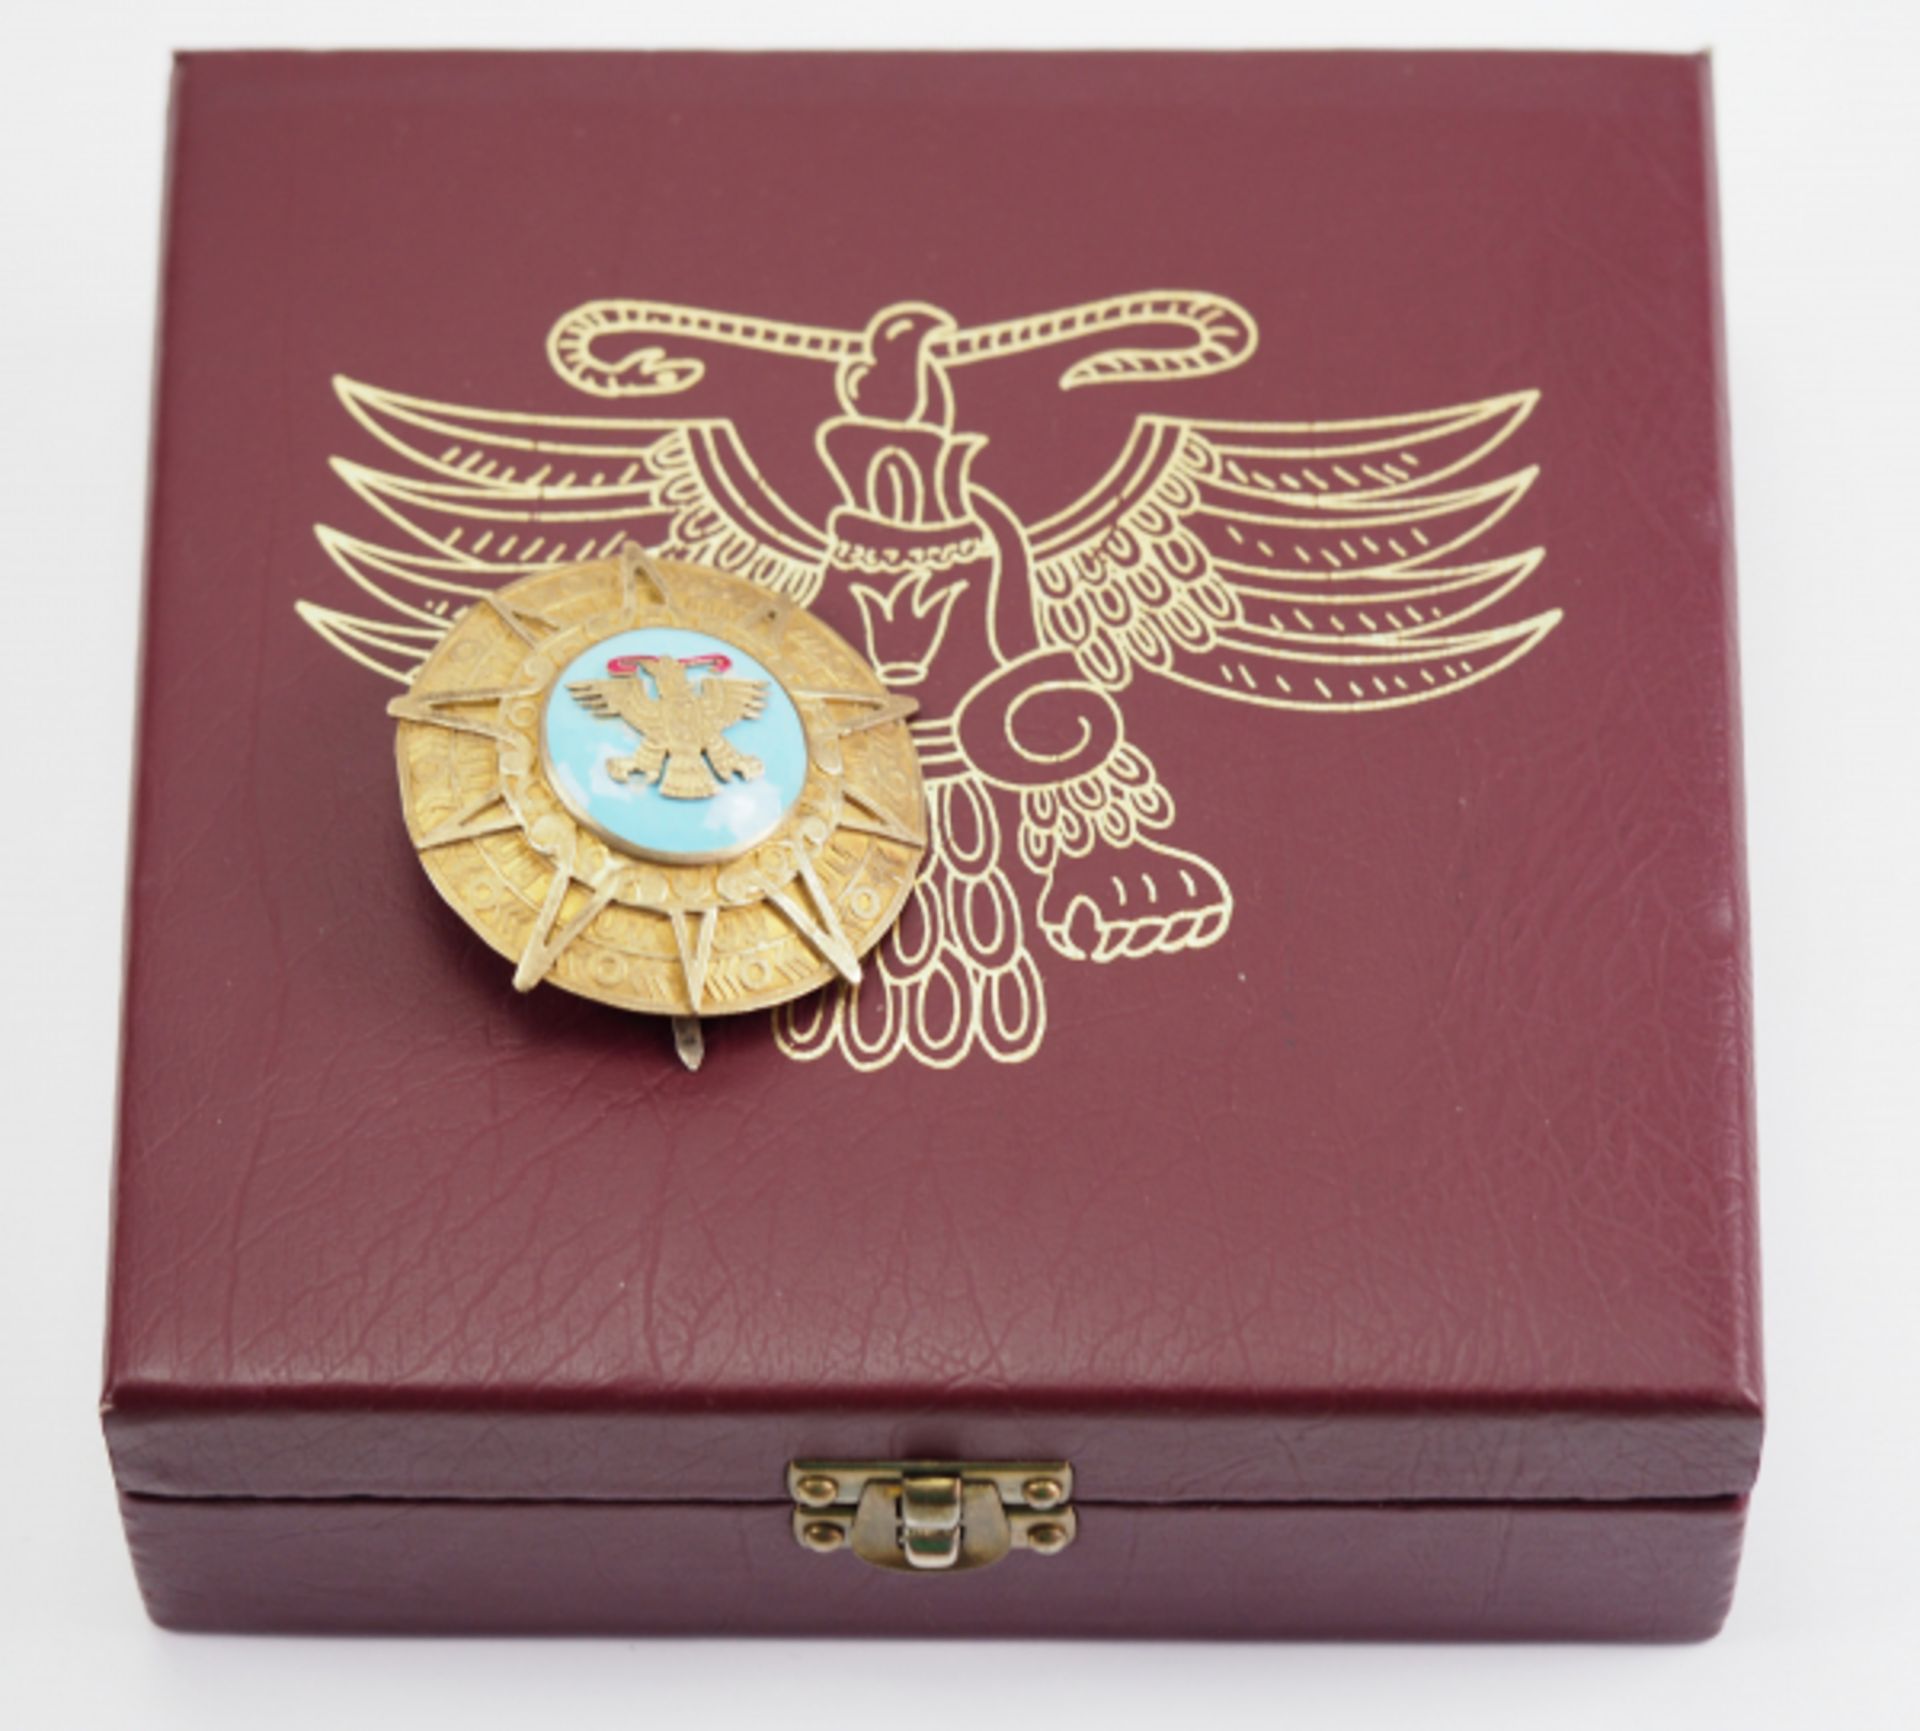 Mexiko: Orden des Aztekischen Adlers, Großkreuz Stern, im Etui.Silber, vergoldet, die Auflage - Bild 3 aus 3